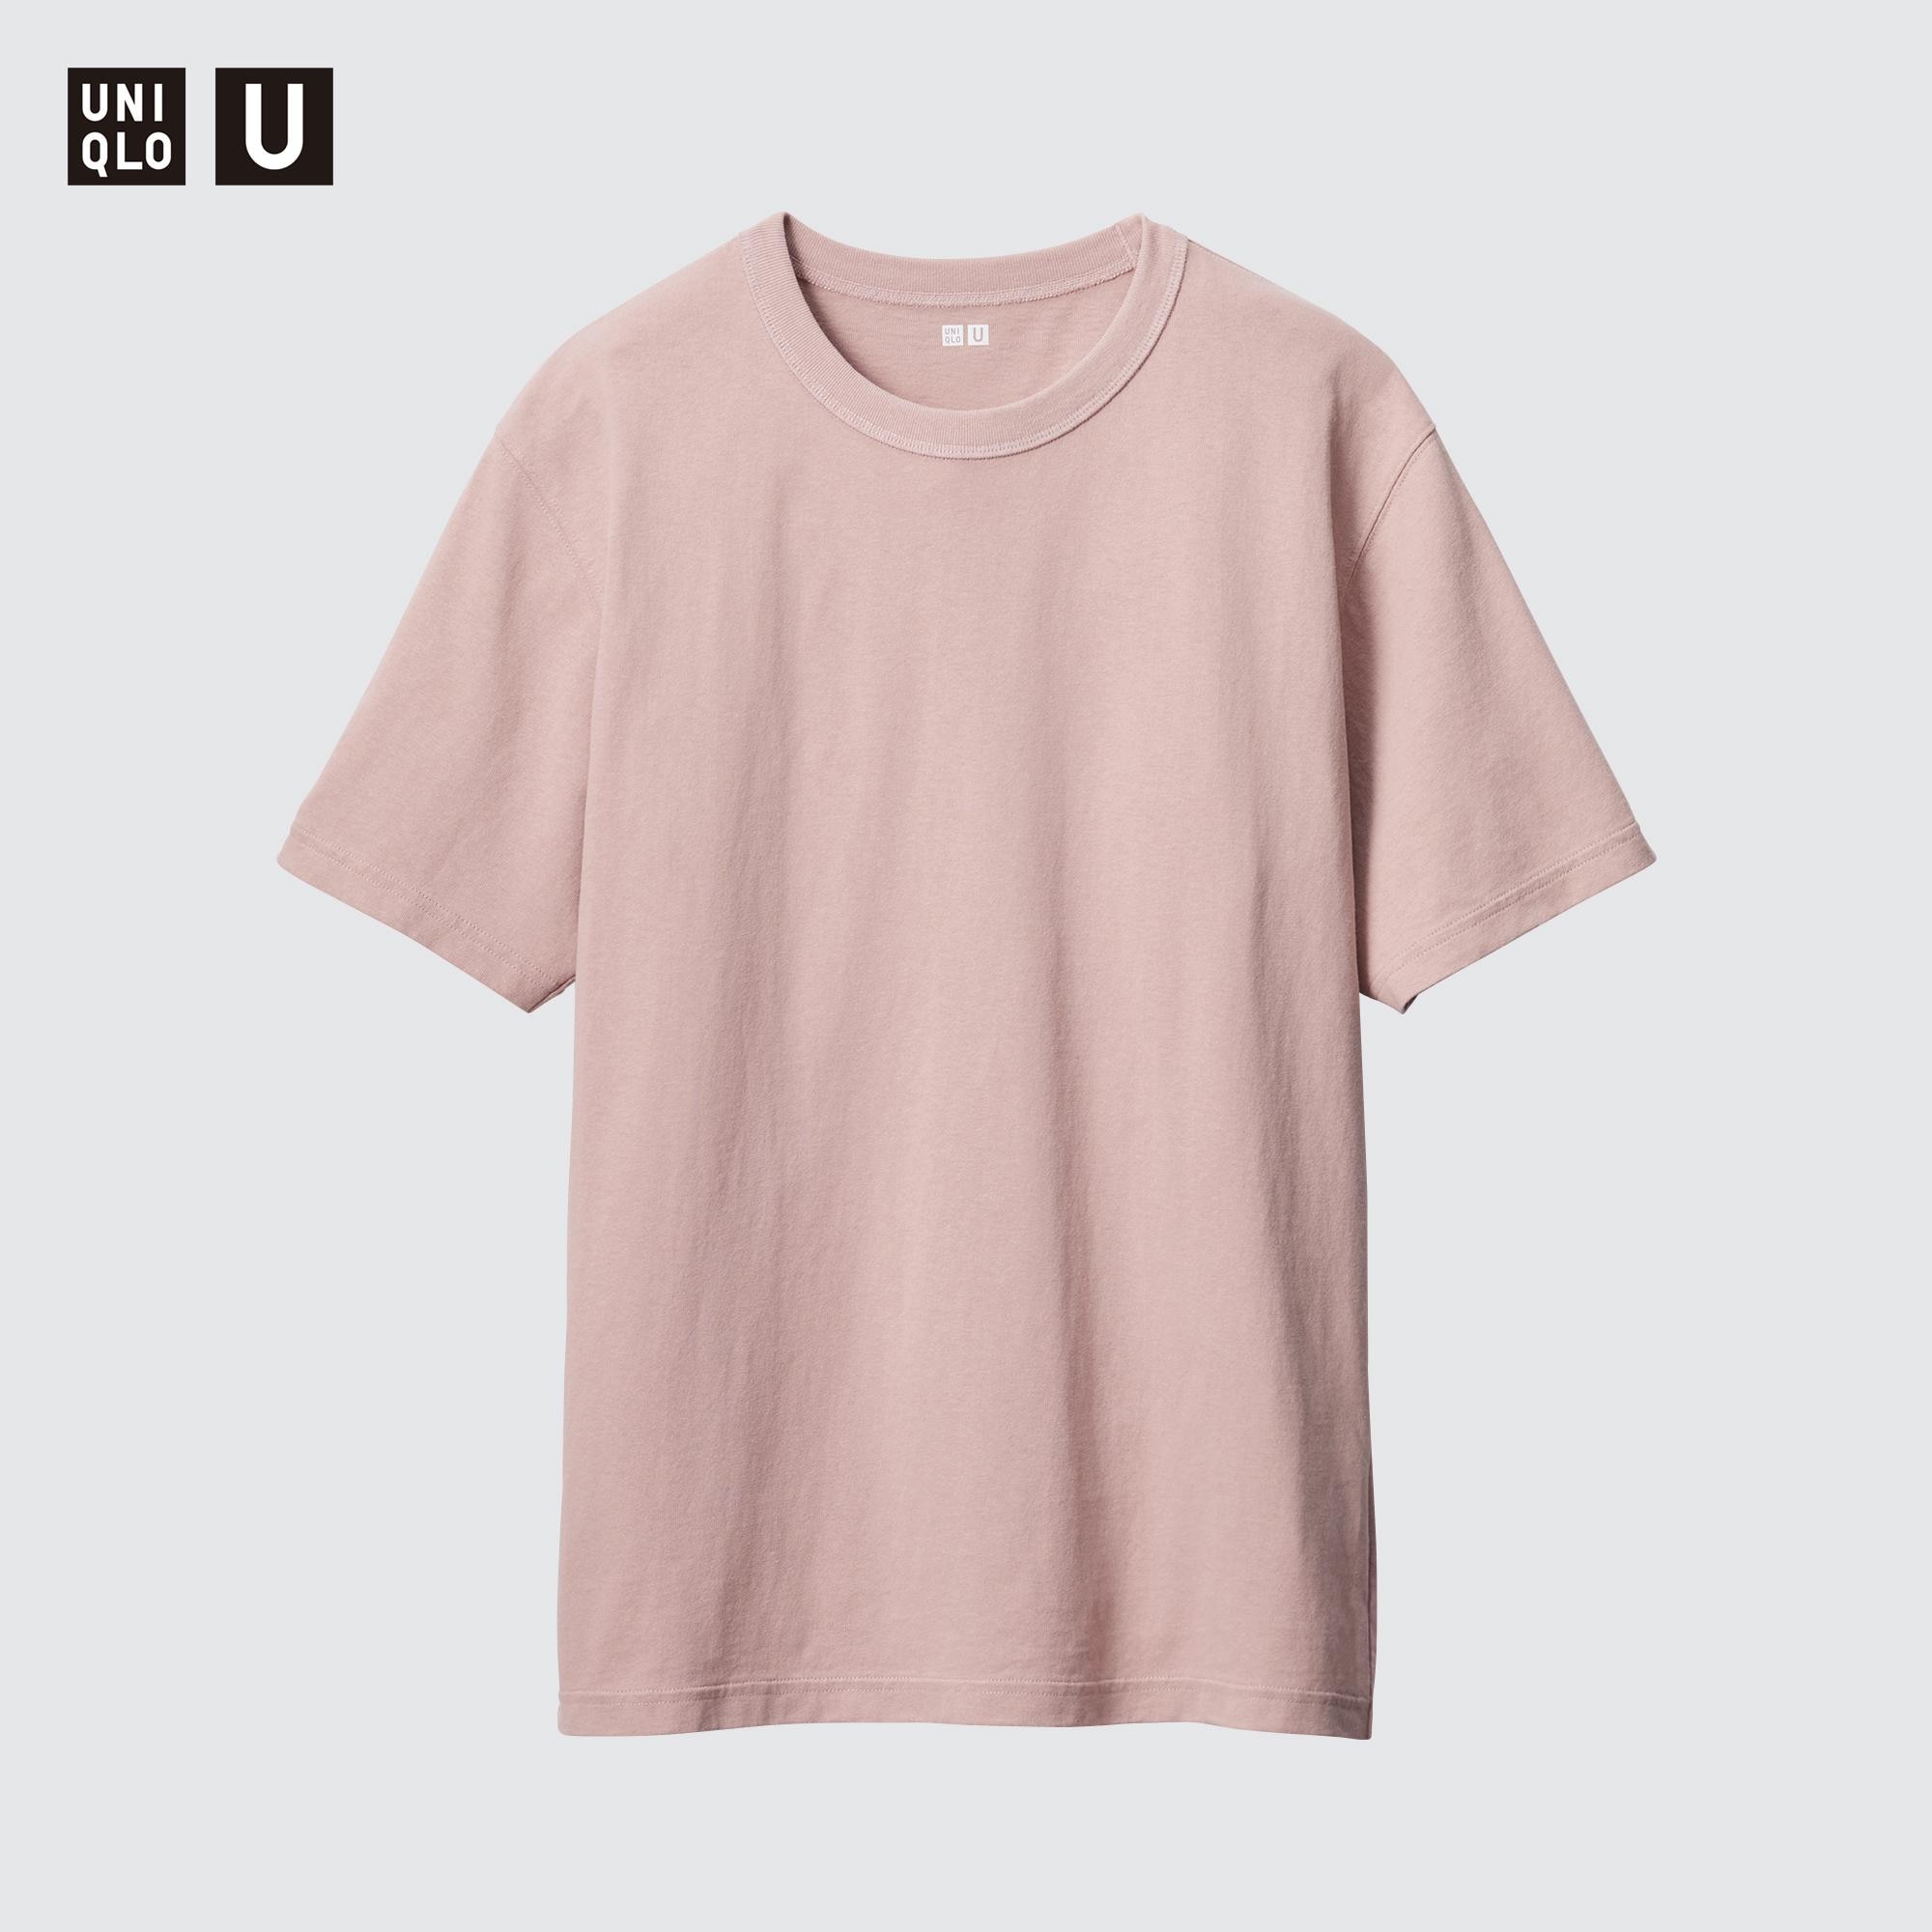 Uniqlo U 100% Cotton Crew Neck T-Shirt